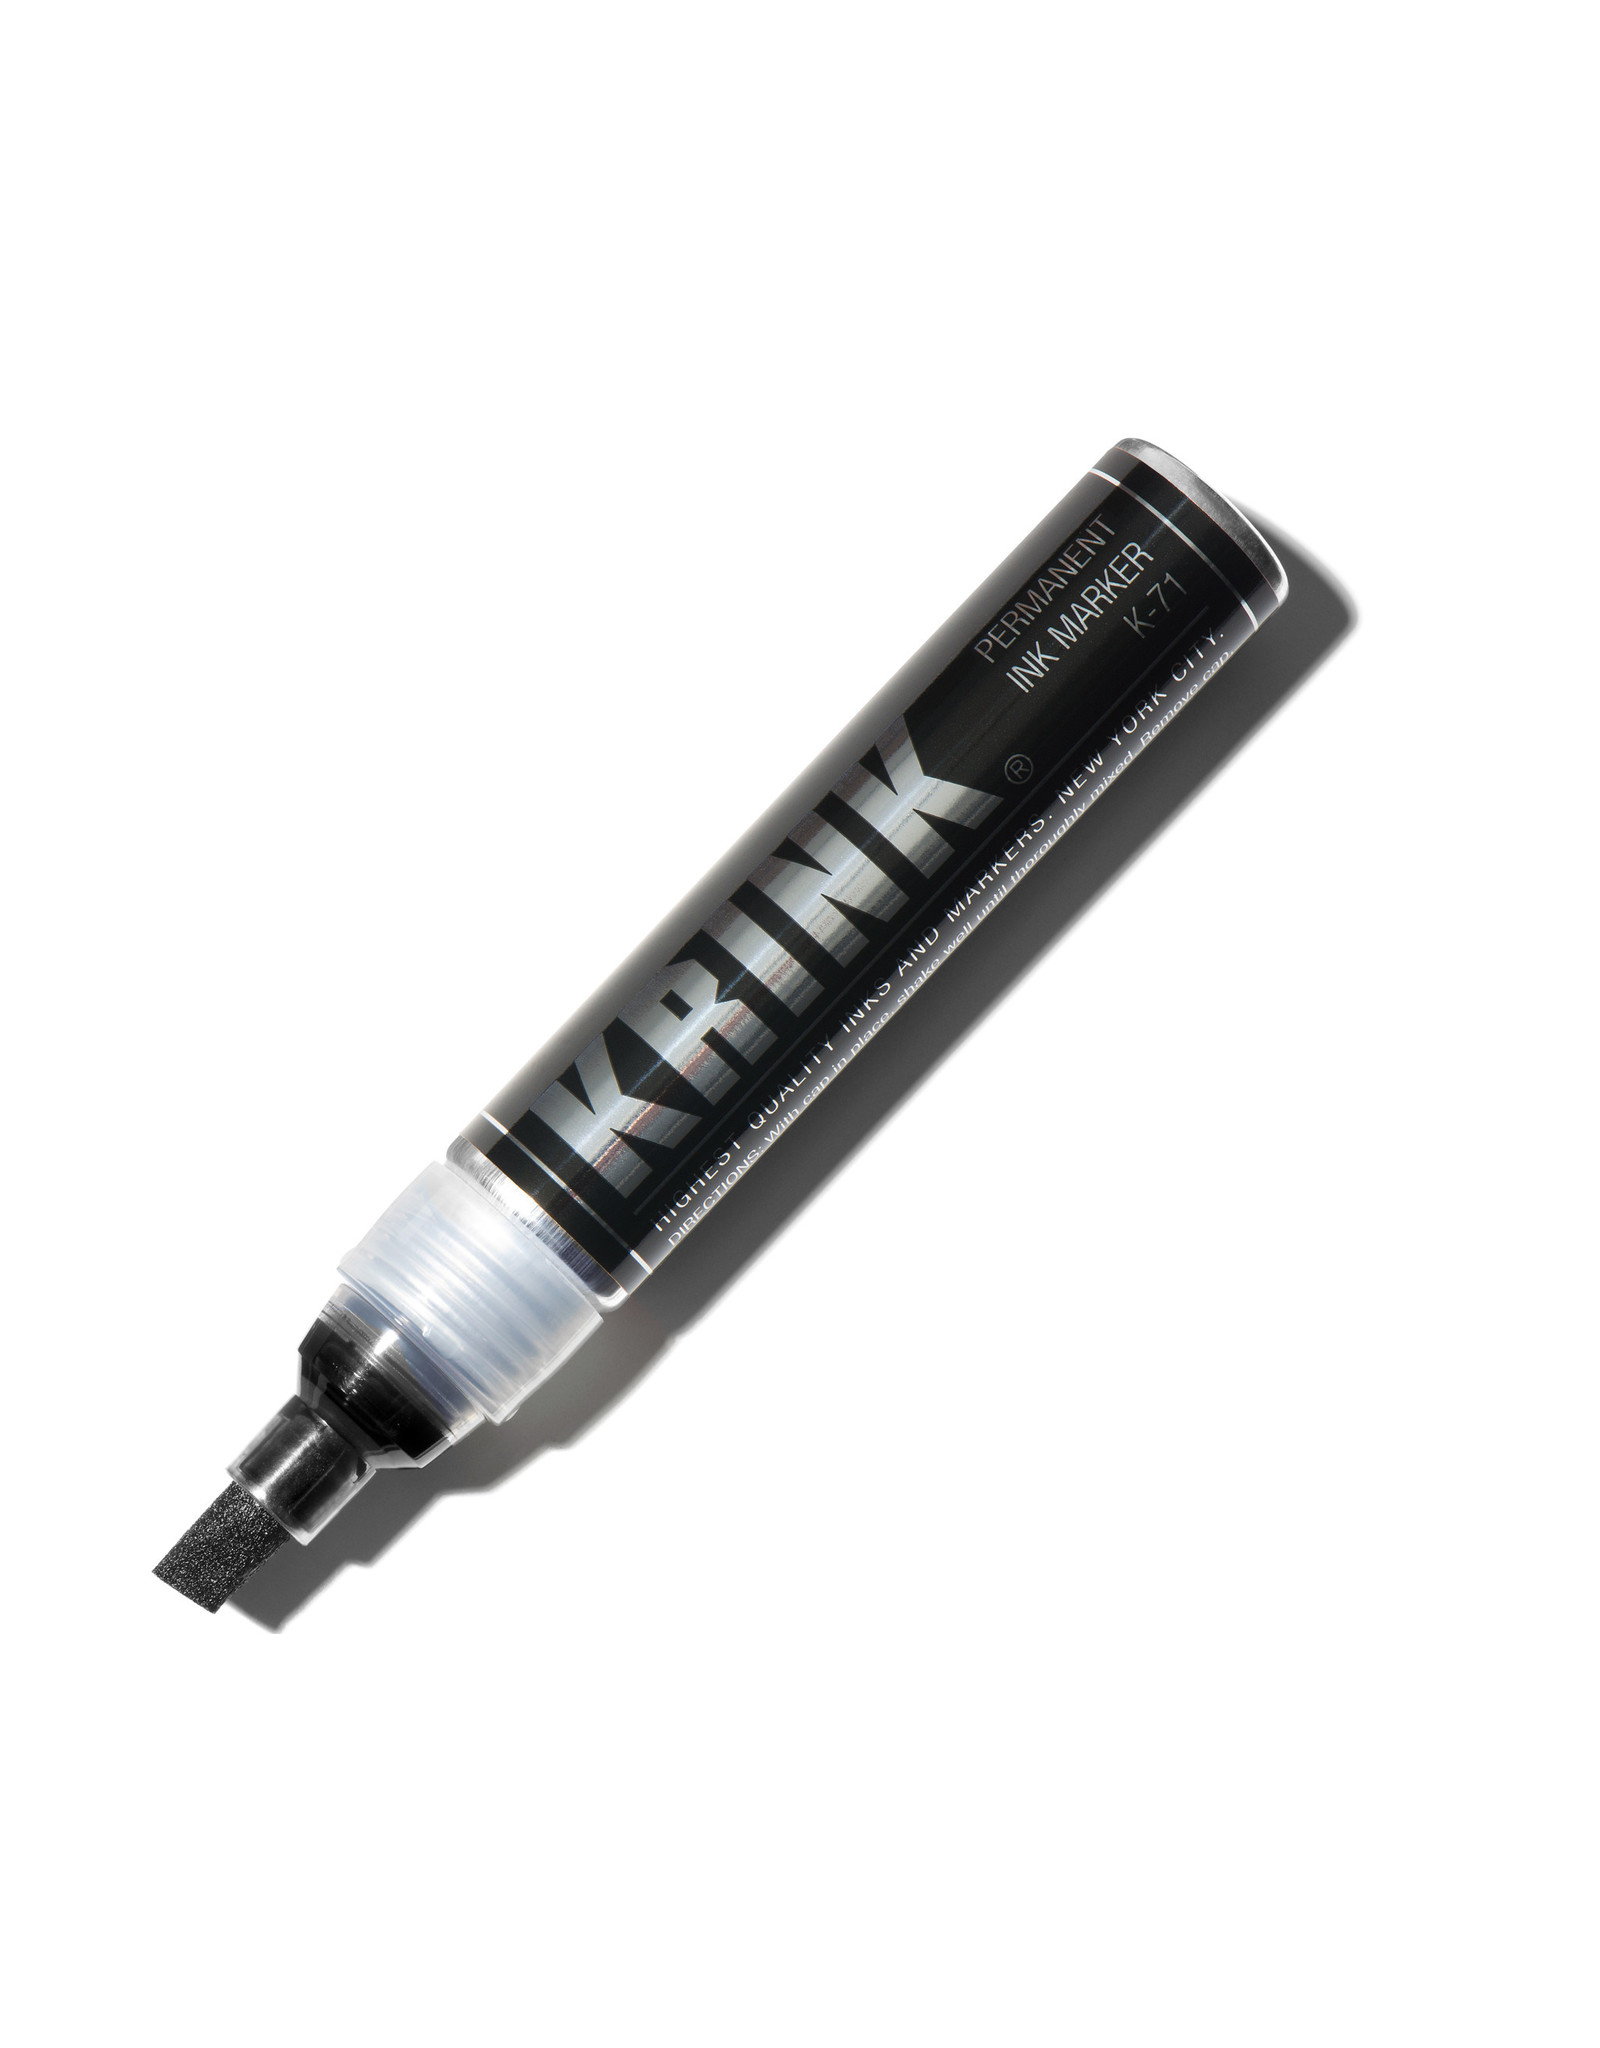 Krink Krink K-71 Alcohol Ink Marker, Black